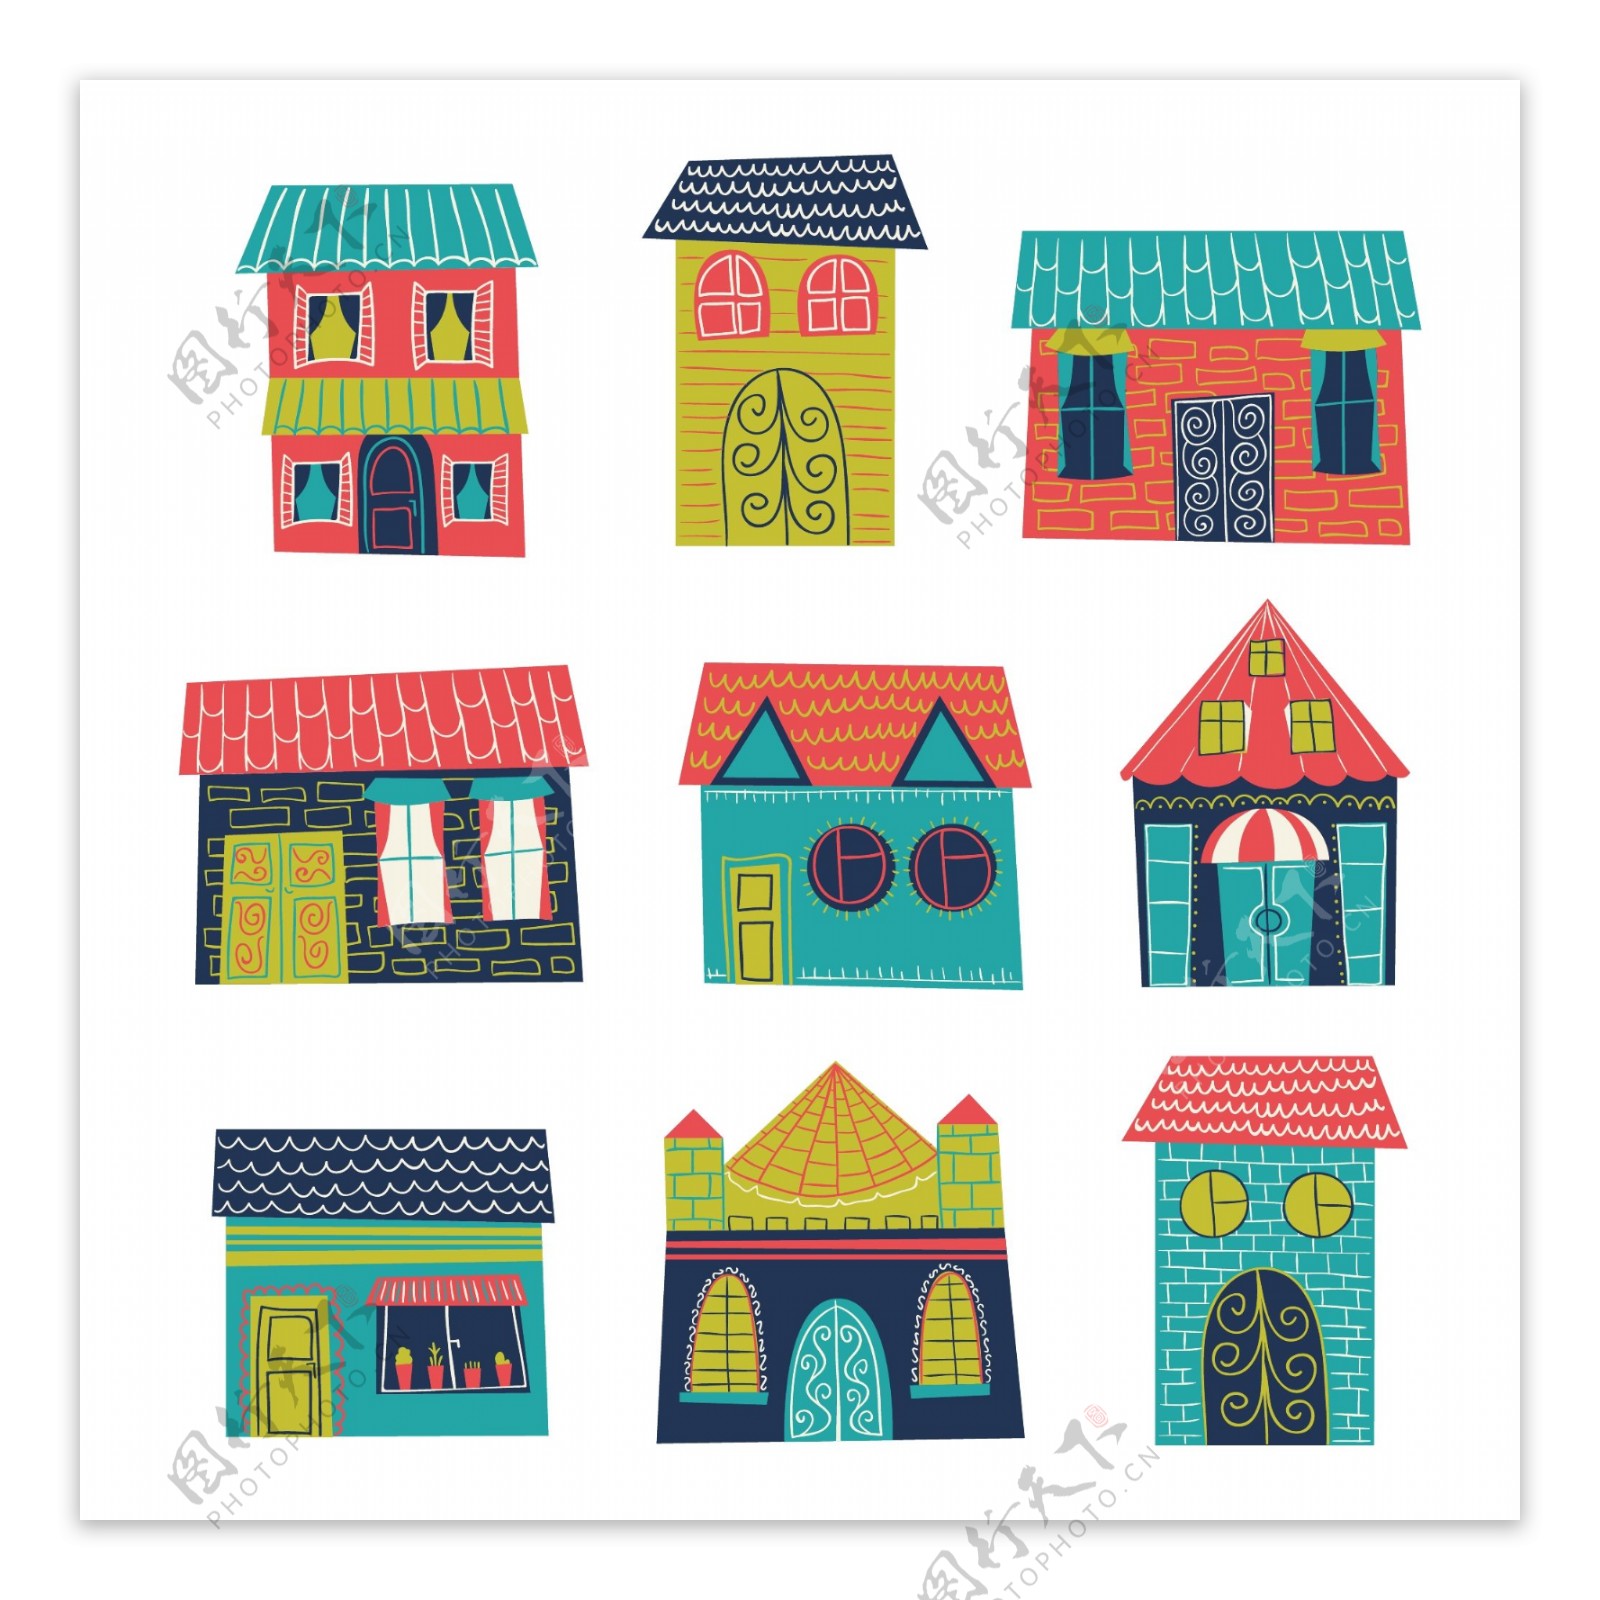 不同的彩色房子图案矢量素材下载